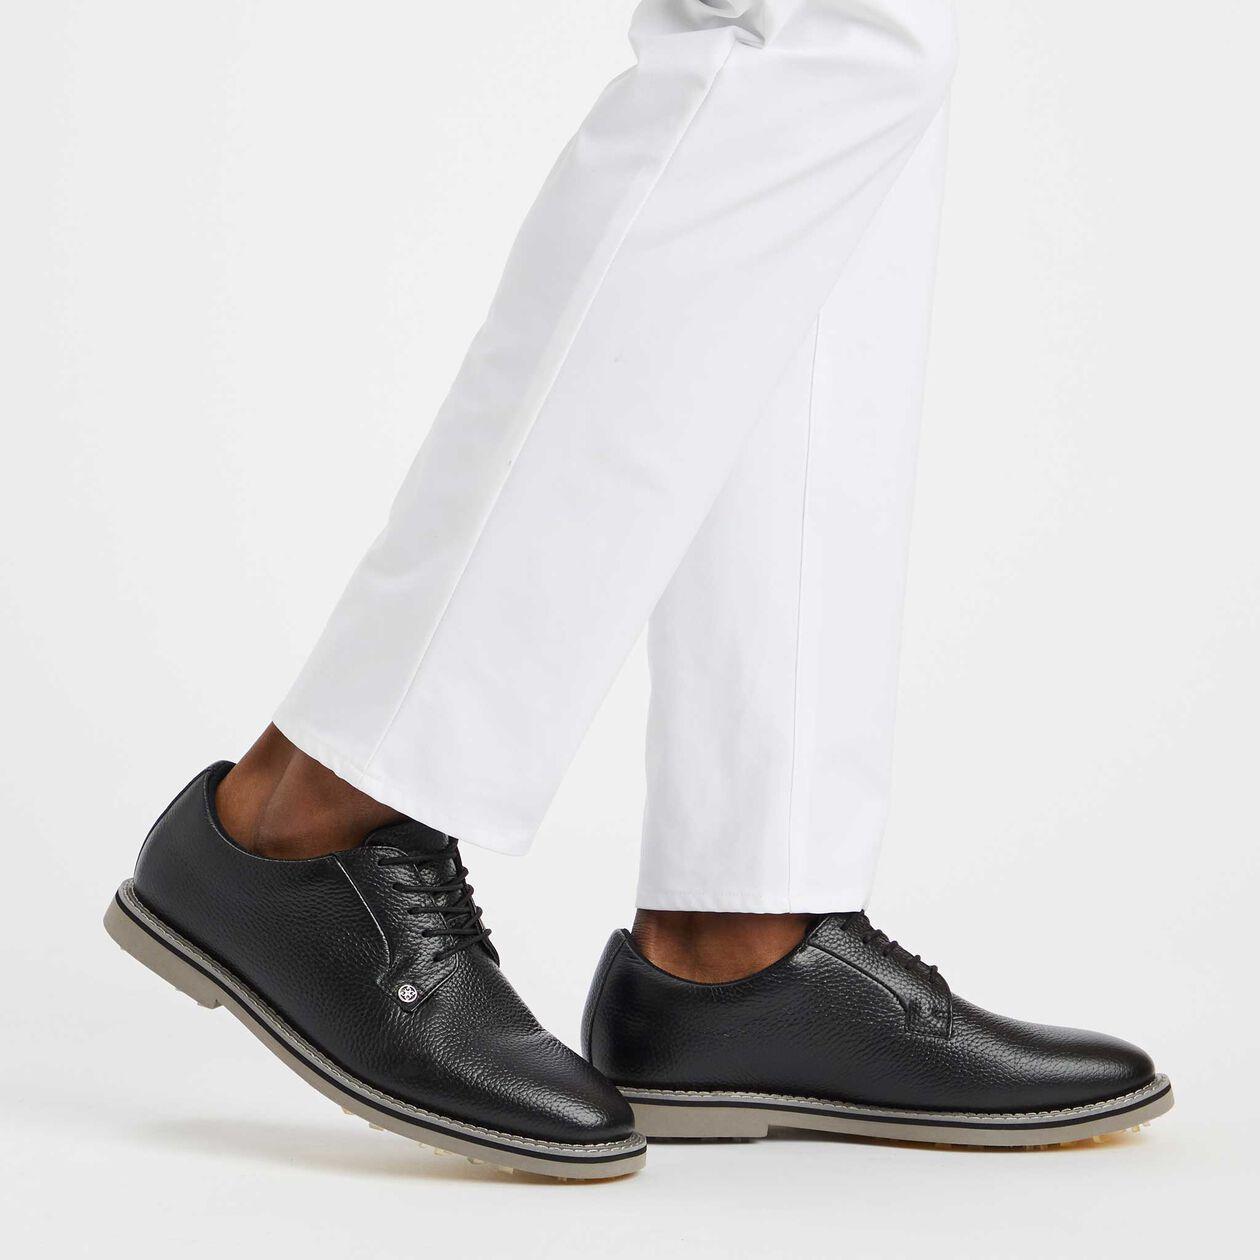 Handmade men's golf shoes in black white red full grain leather